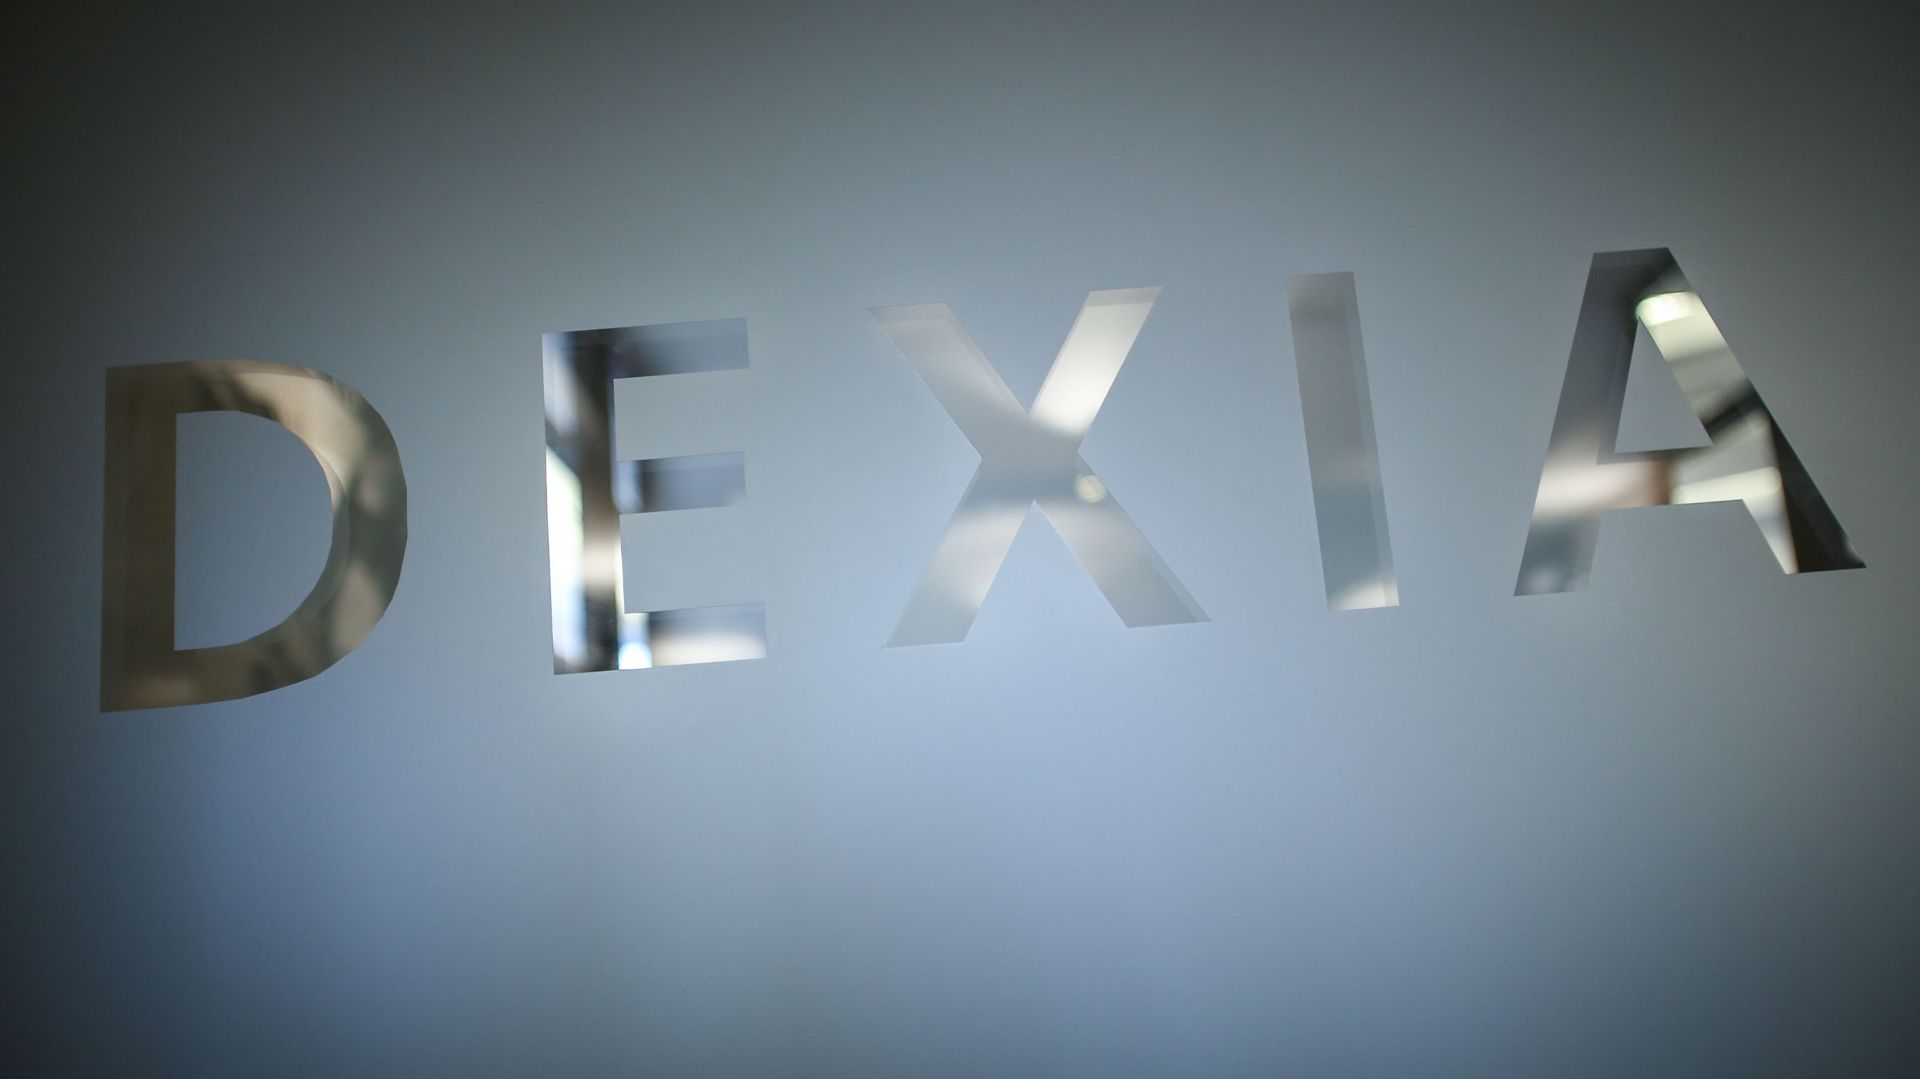 Dexia vend sa filiale de gestion d'actifs pour 380 millions d'euros